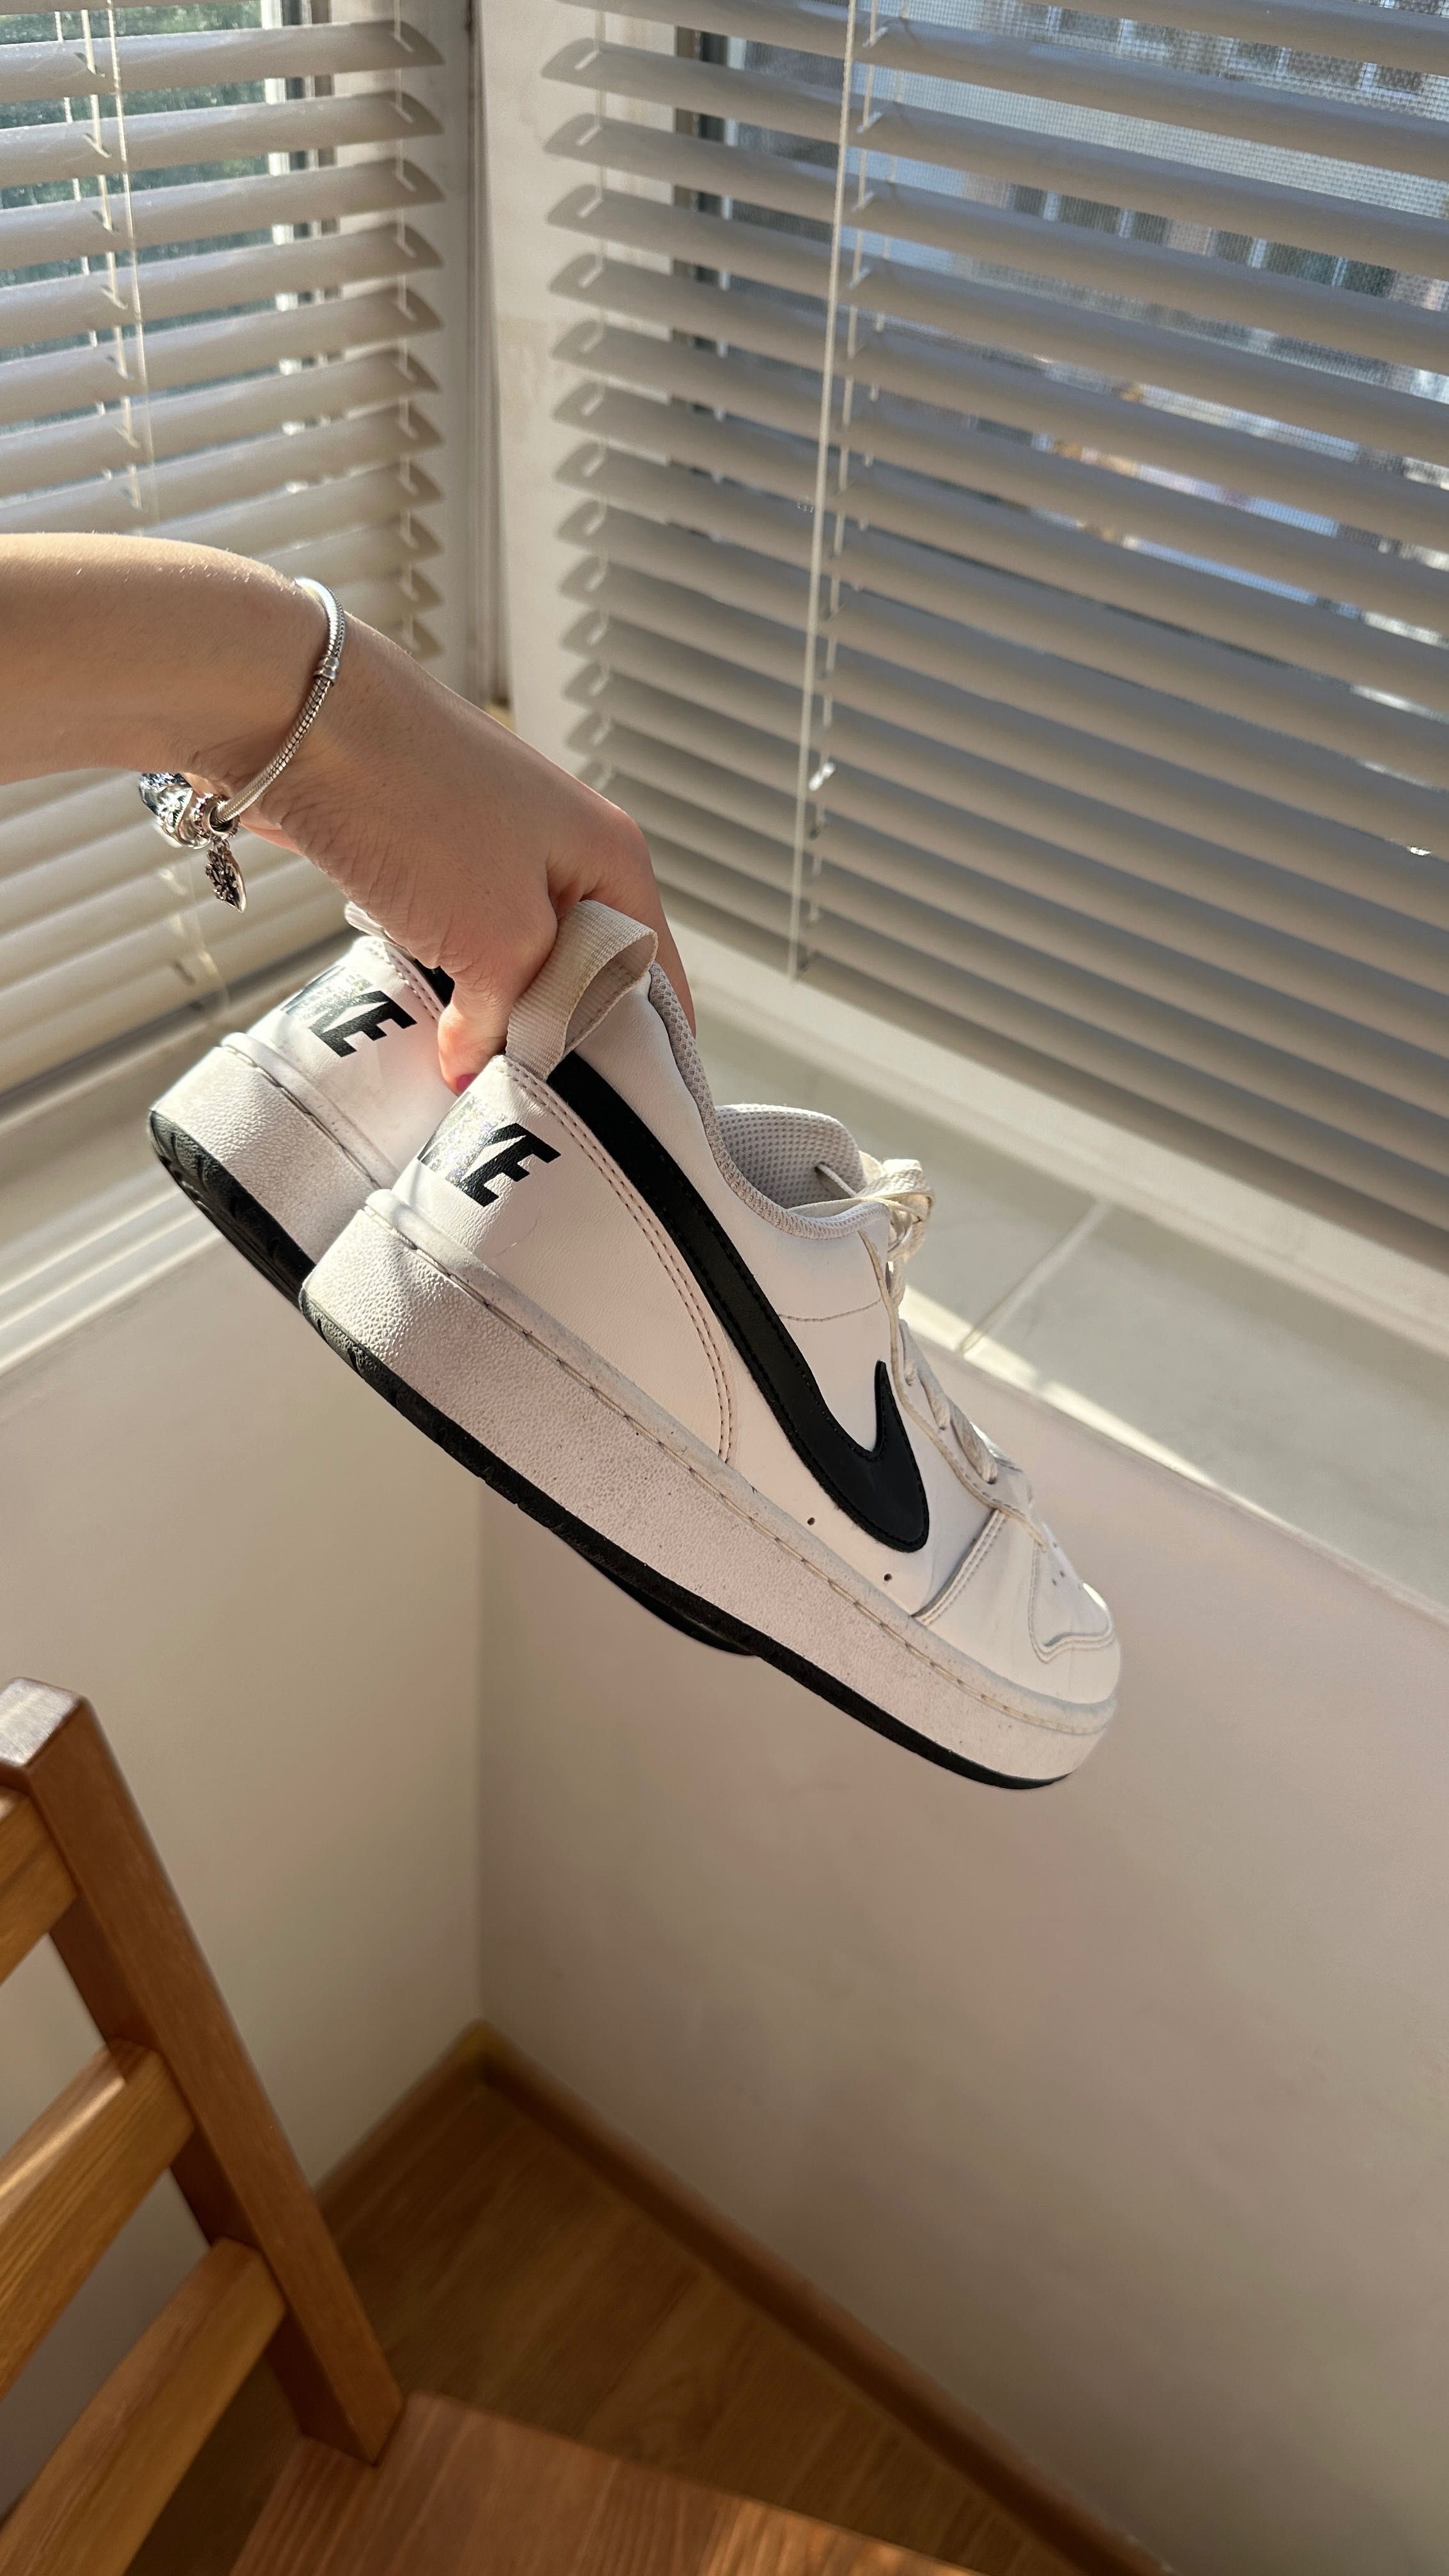 Nike court vision обувки, 37 номер